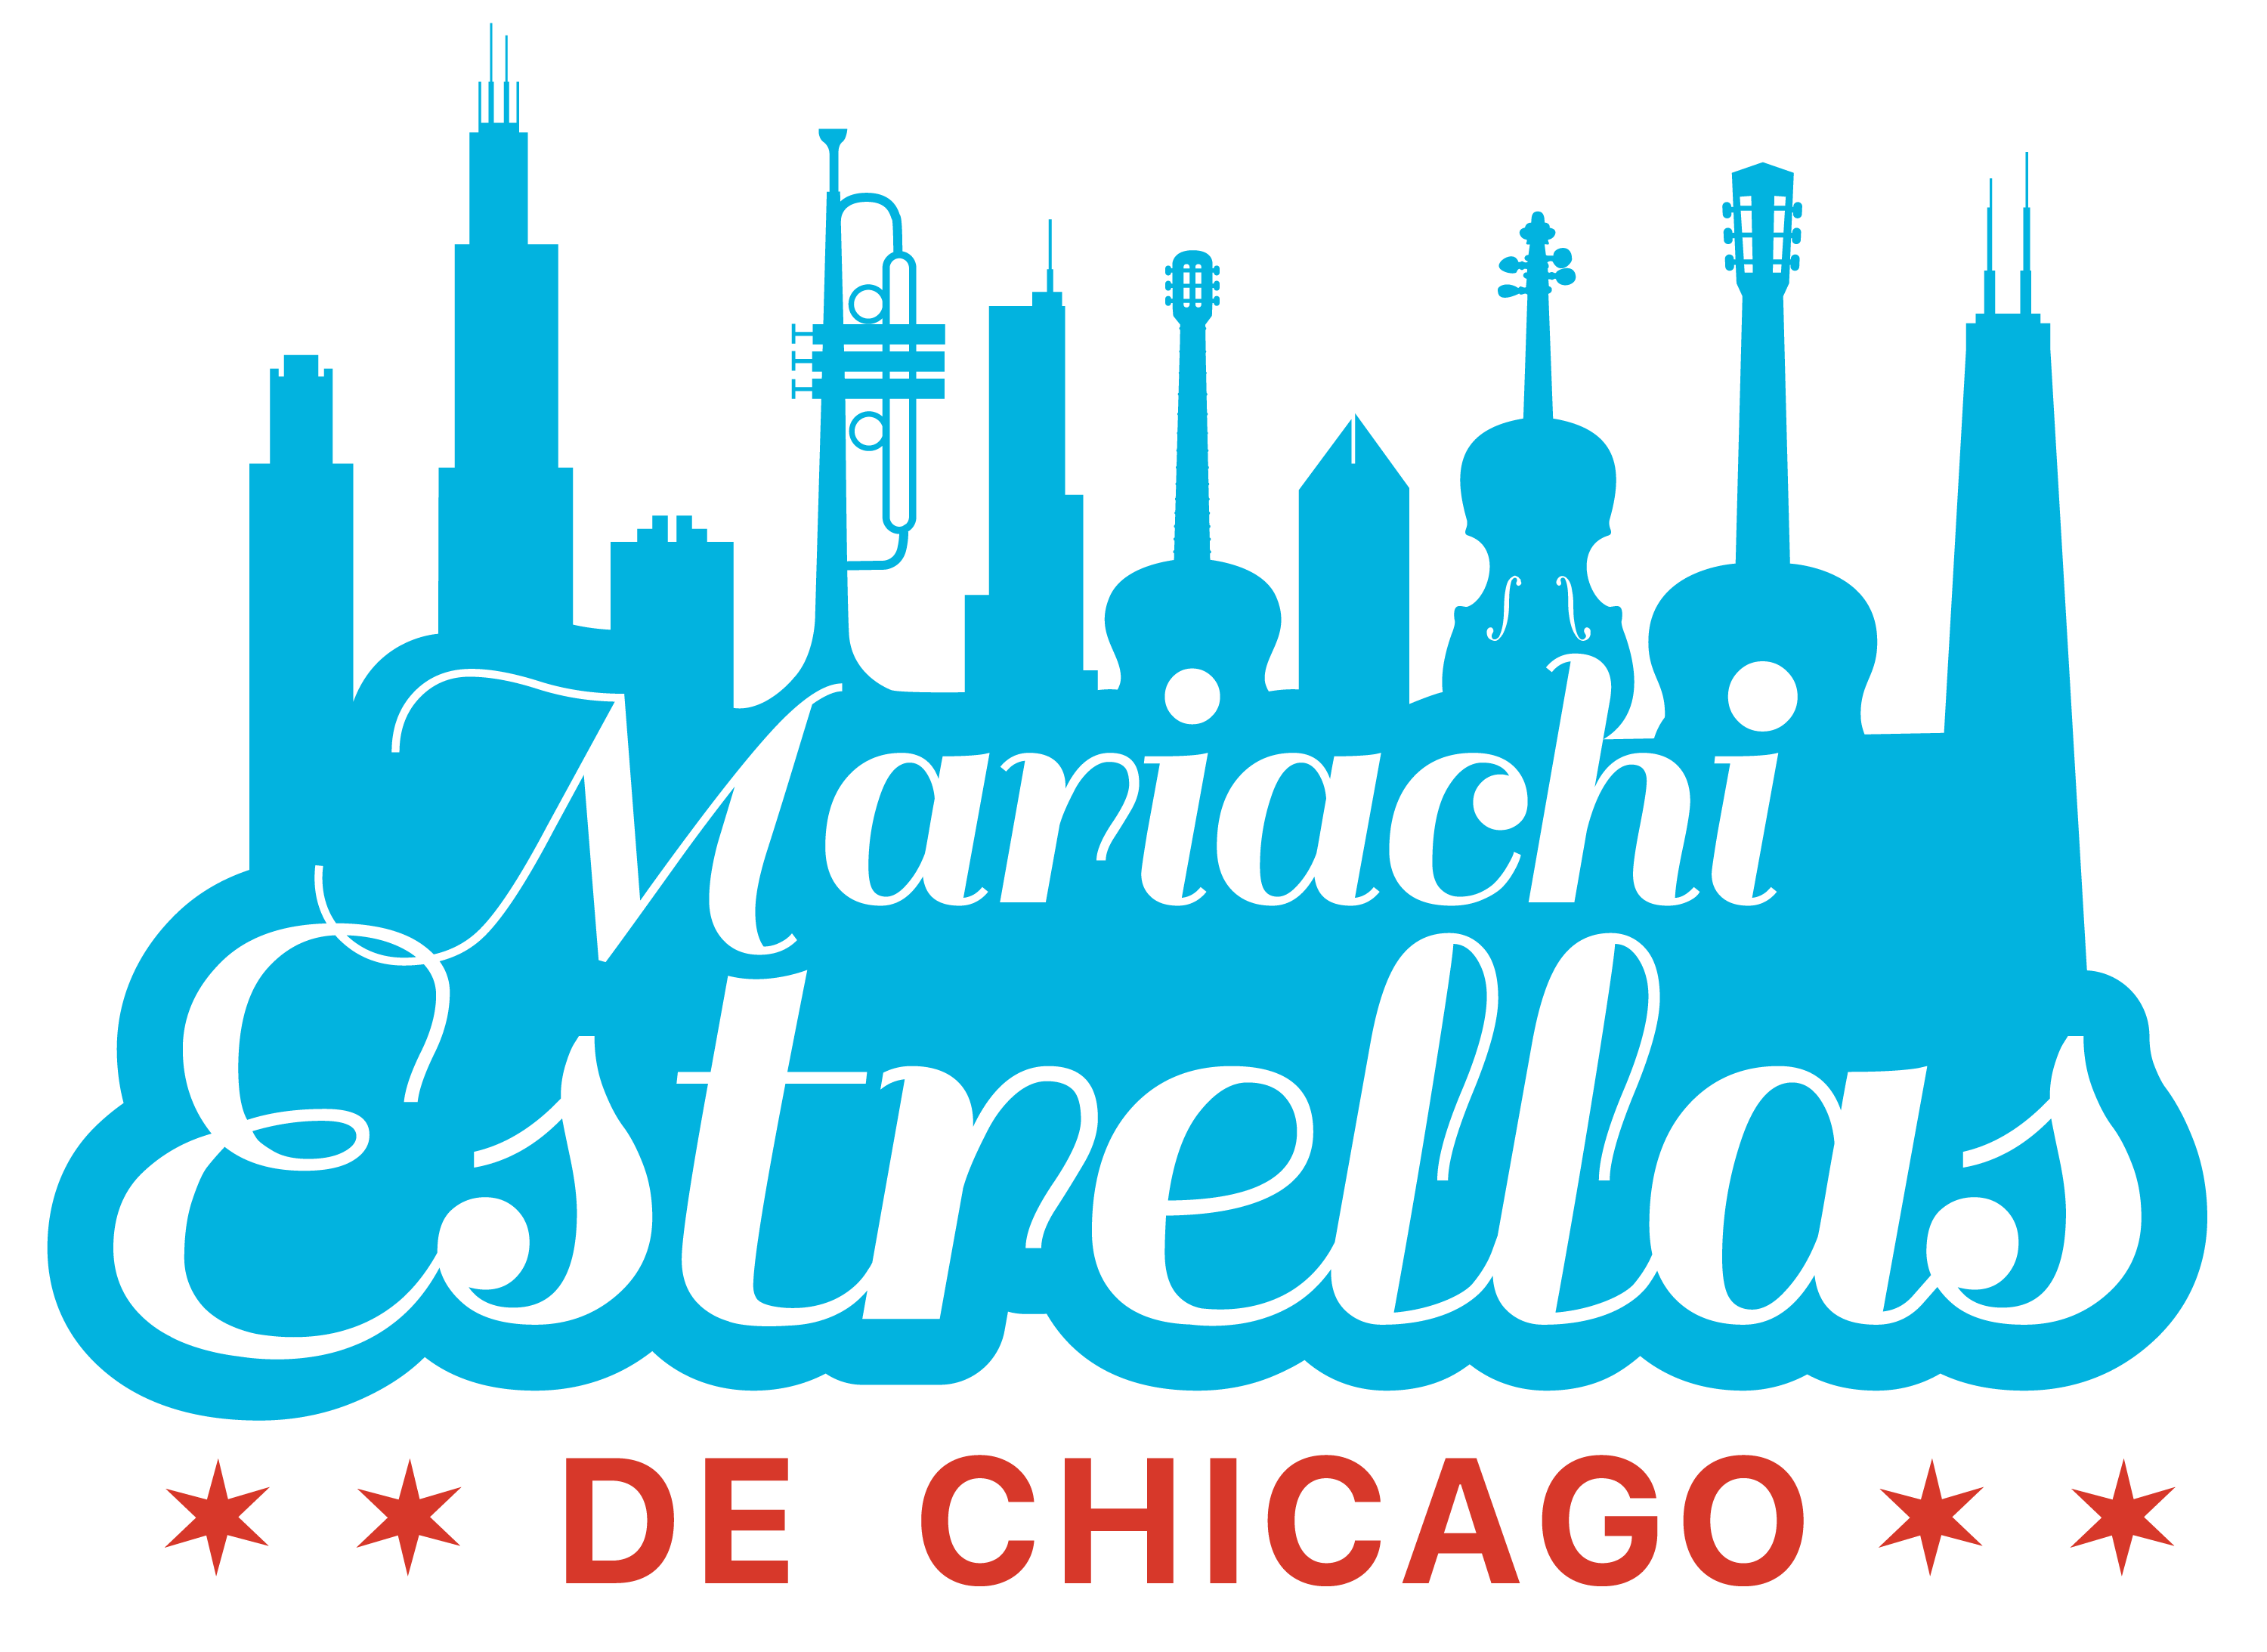 Mariachi Estrellas de Chicago